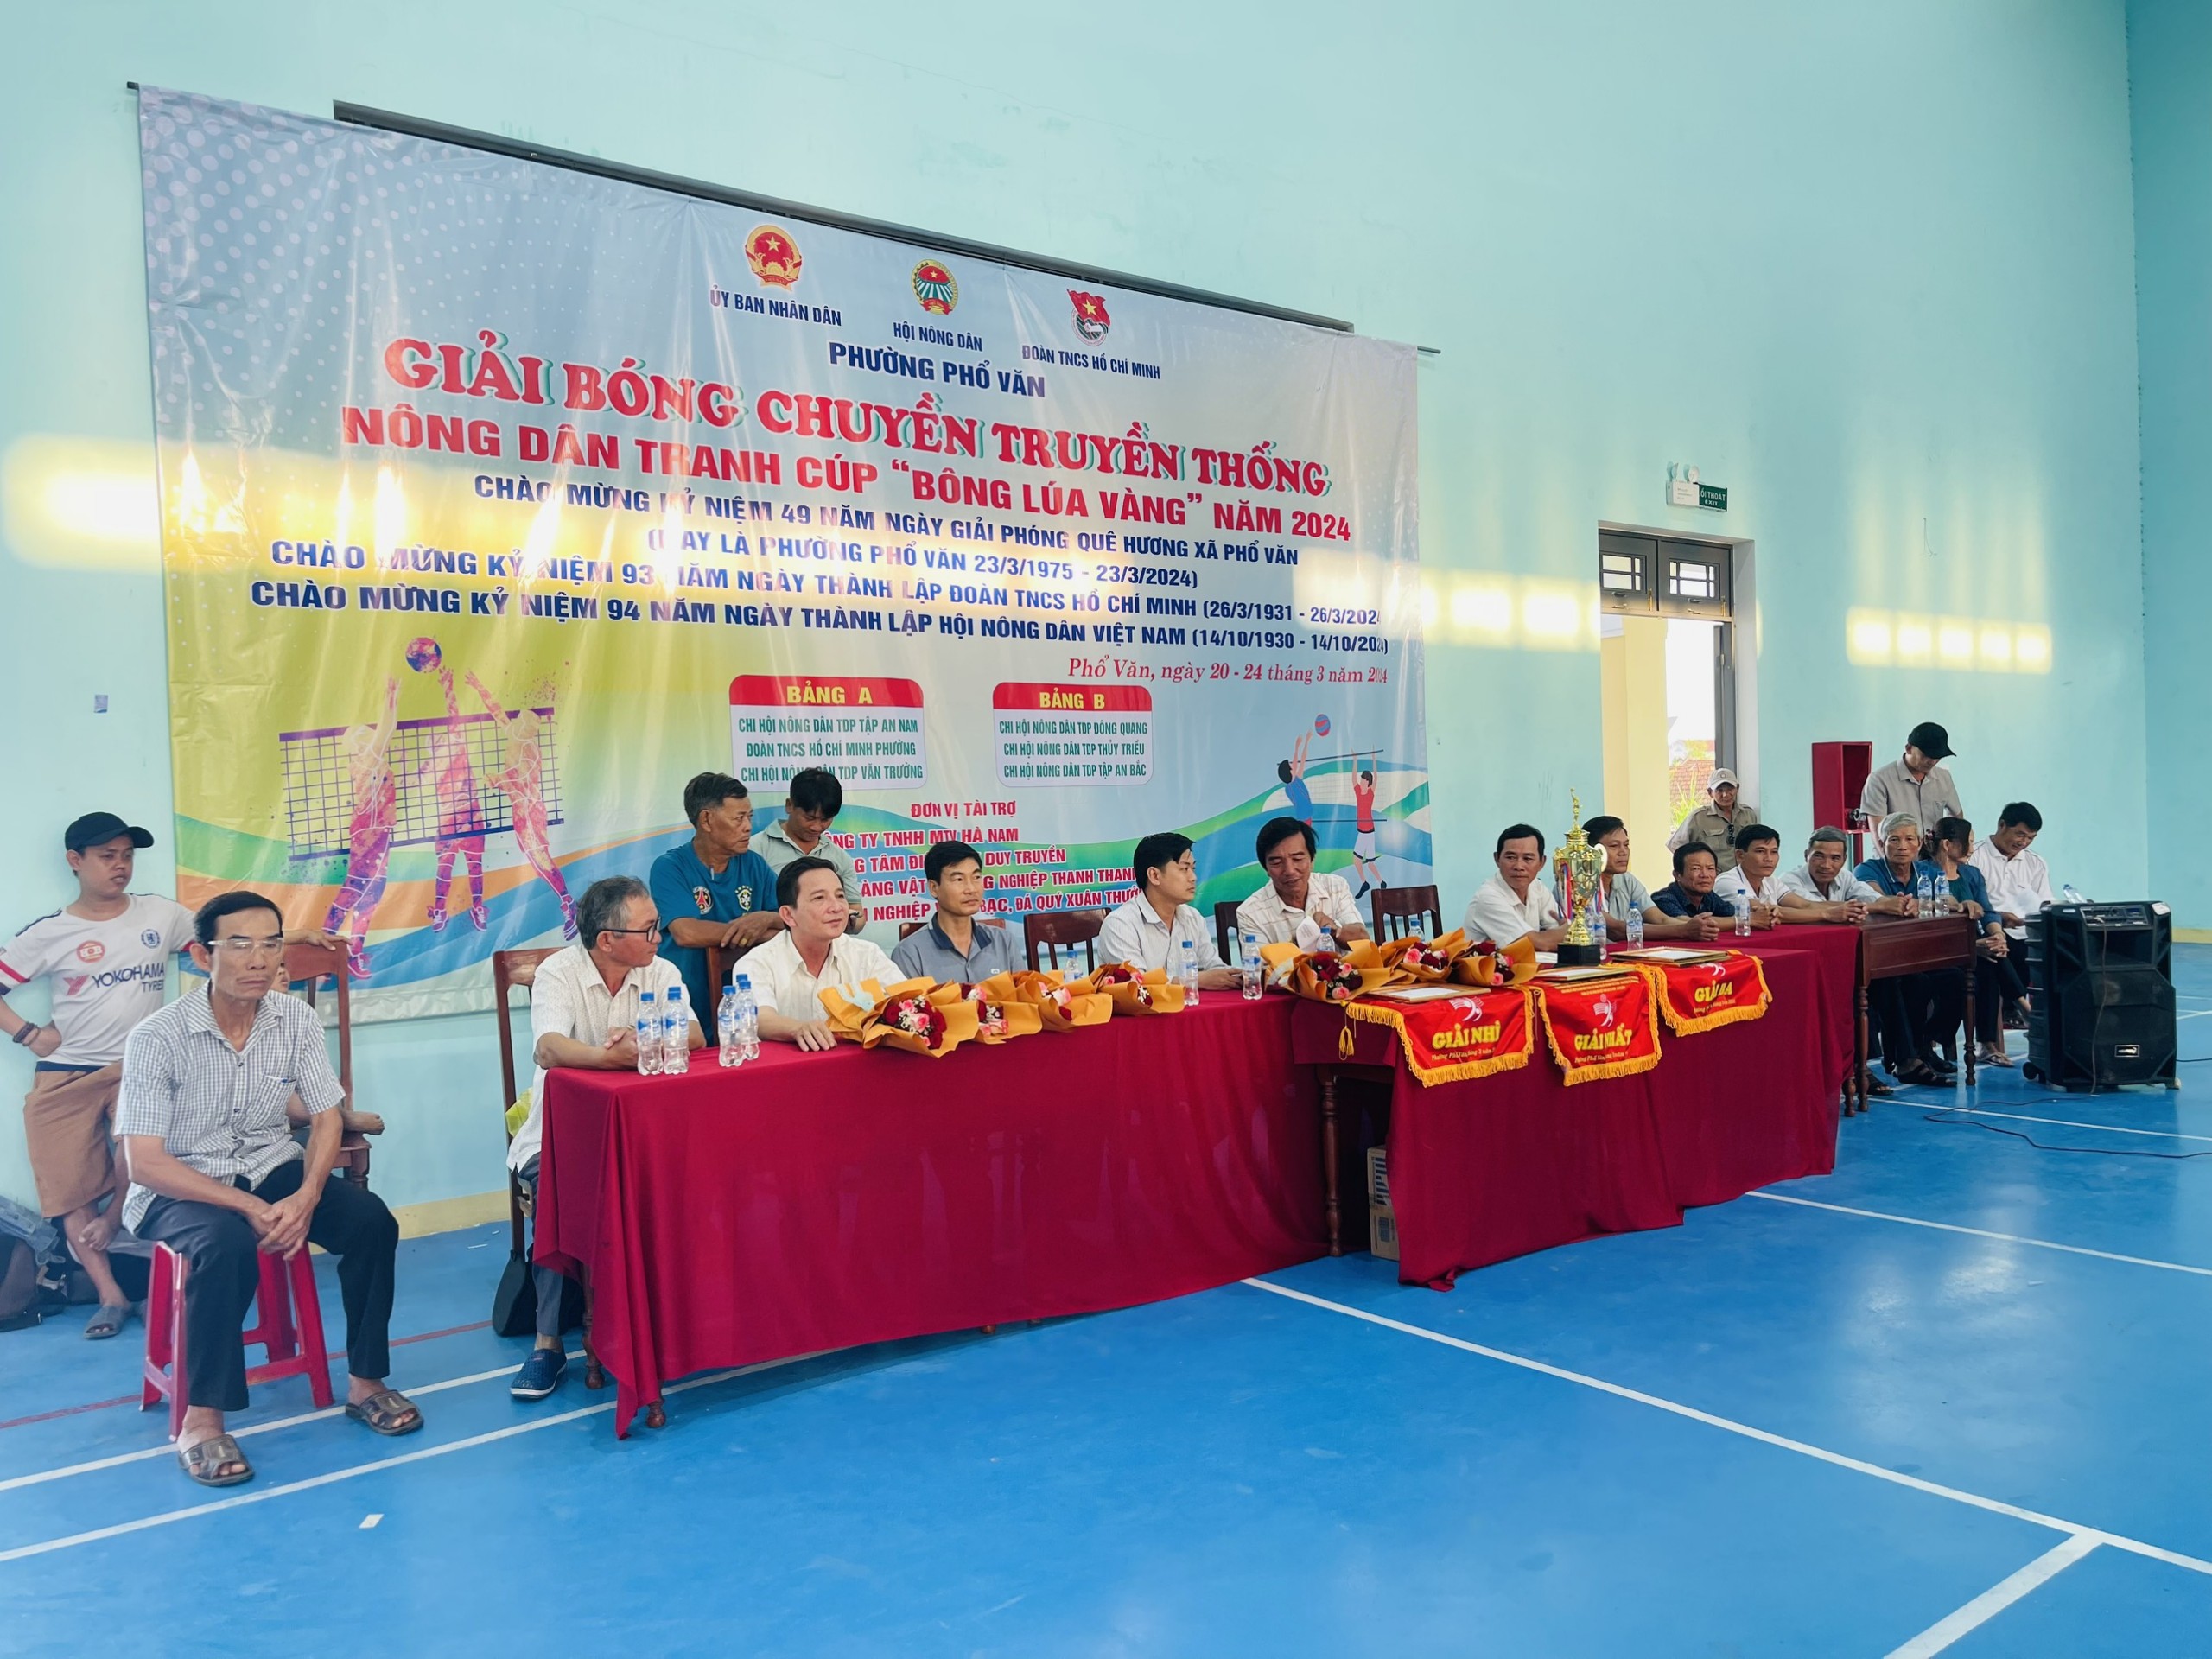 Giải bóng chuyền truyền thống nông dân tranh cúp “Bông lúa vàng” phường Phổ Văn năm 2024.